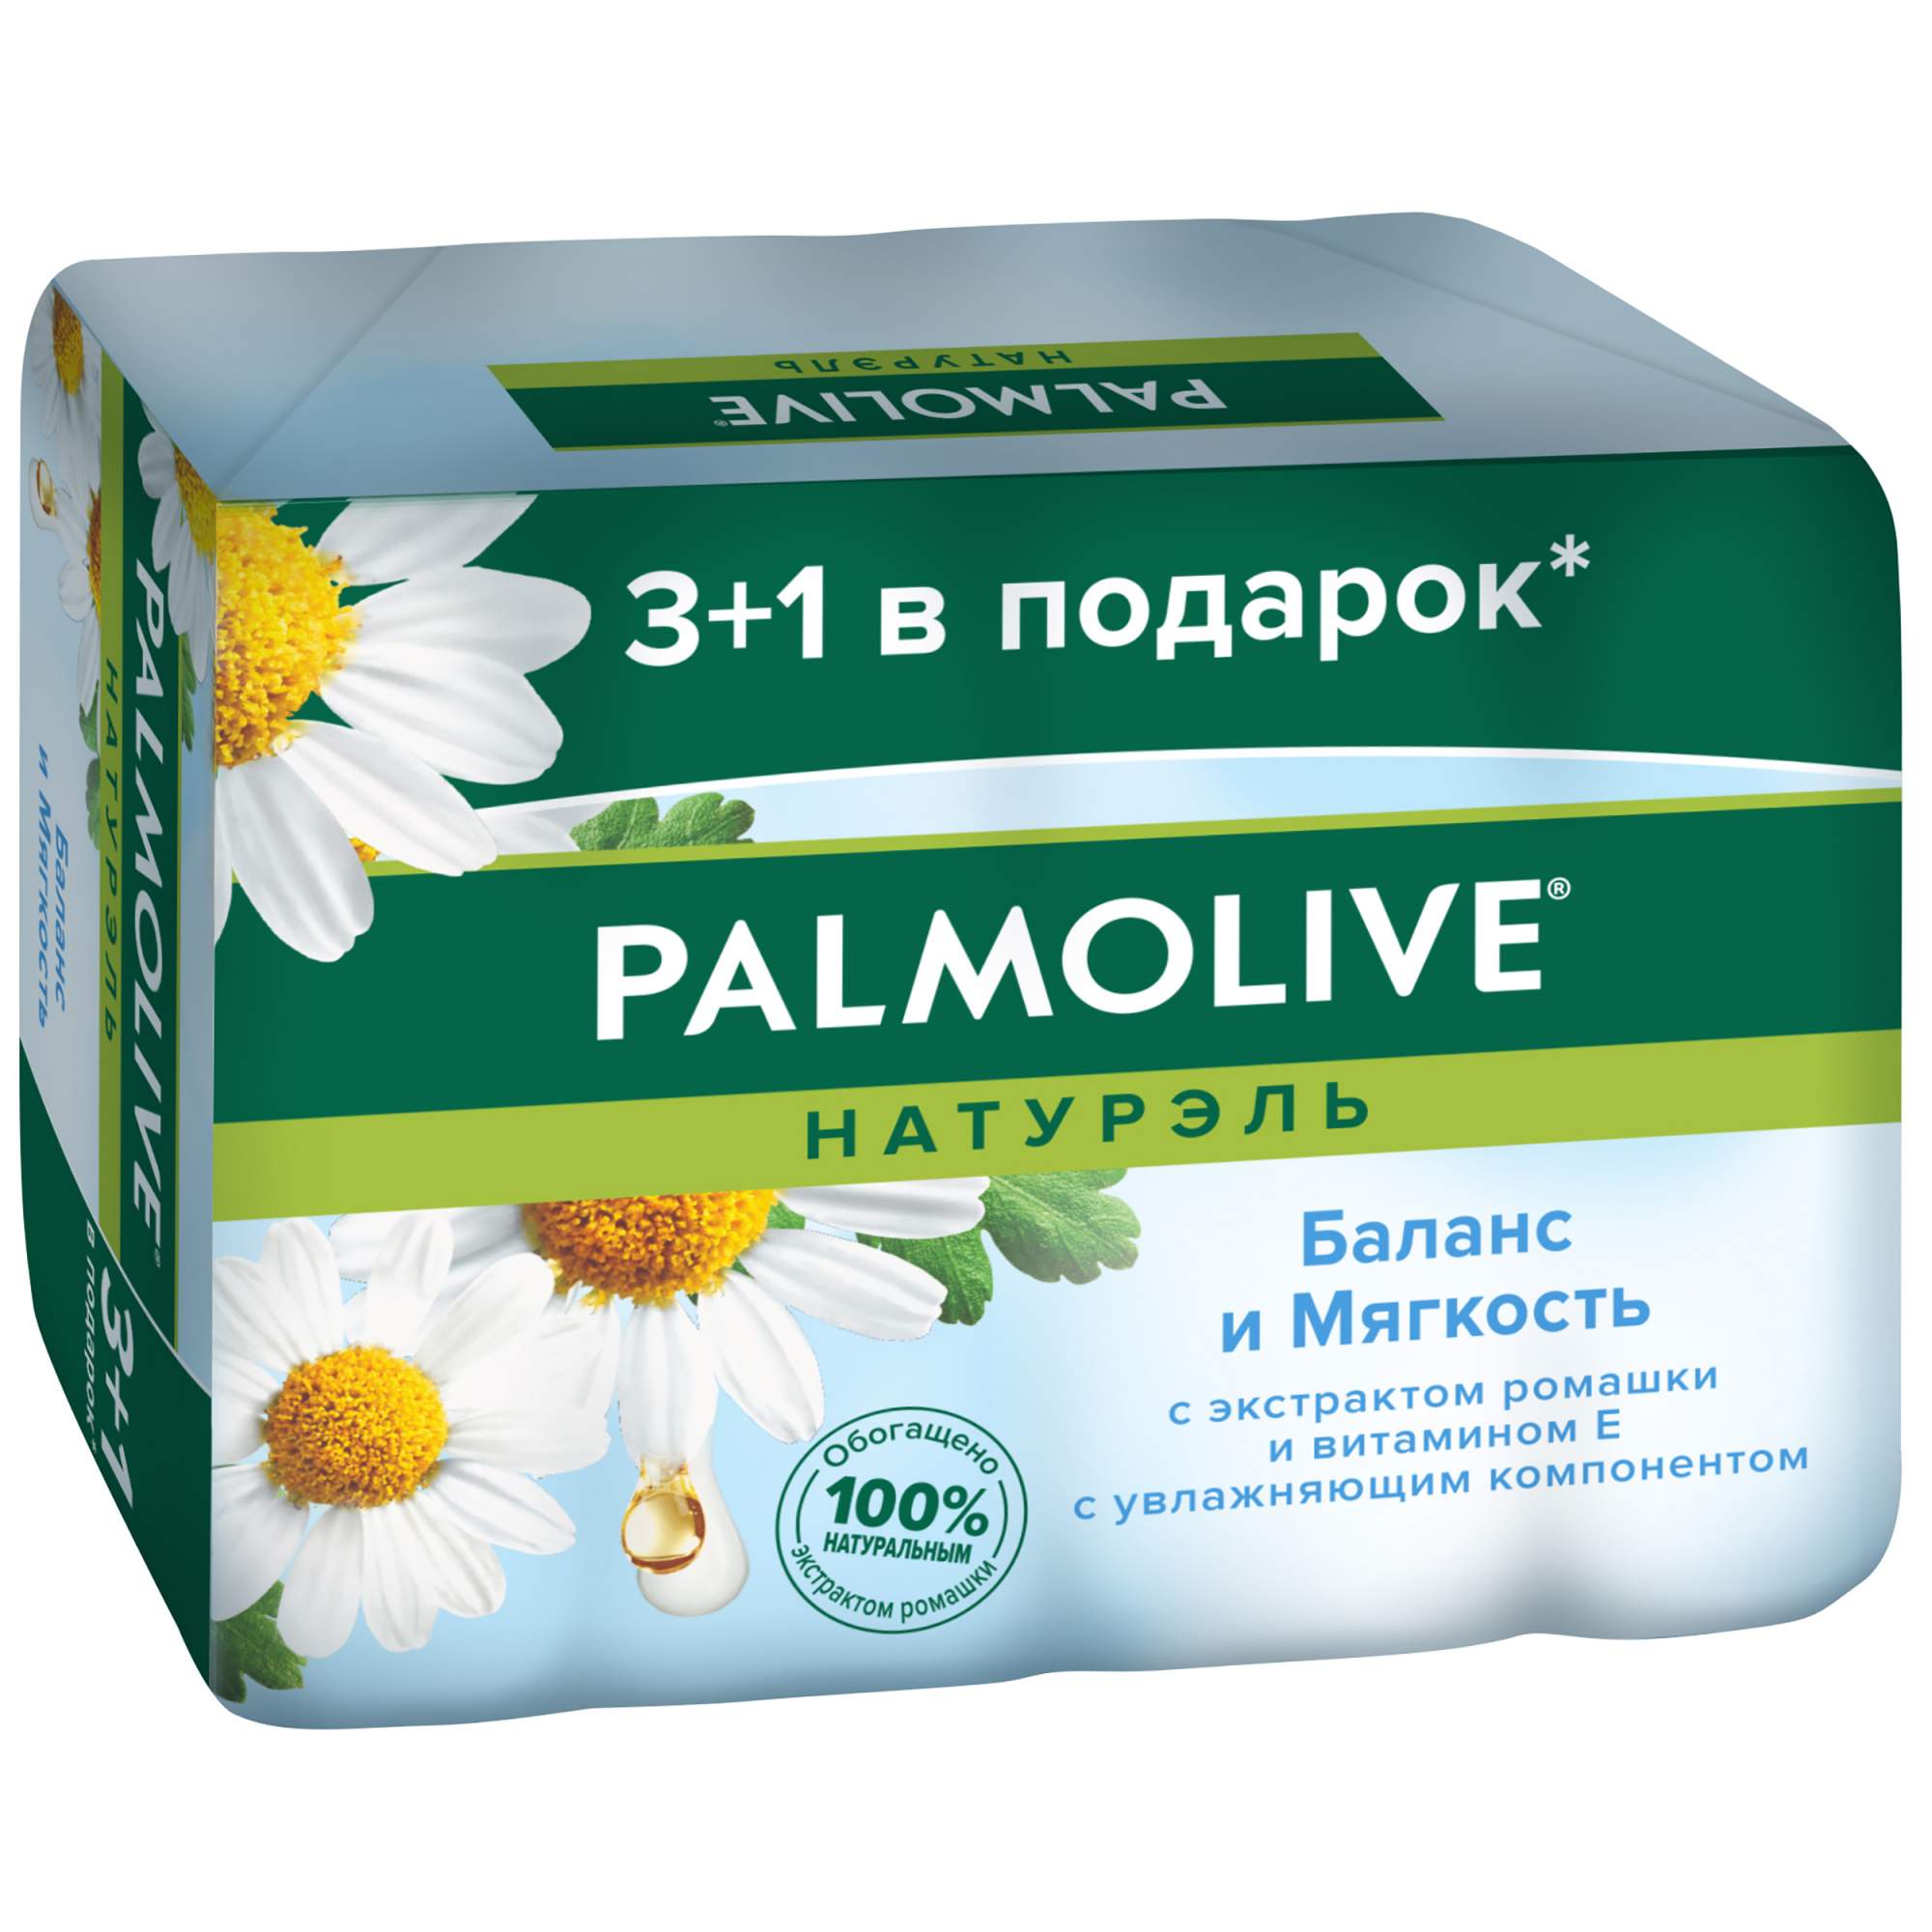 Купить косметическое мыло Palmolive Баланс и Мягкость с экстрактом ромашки и витамином Е, цены на Мегамаркет | Артикул: 100002568237